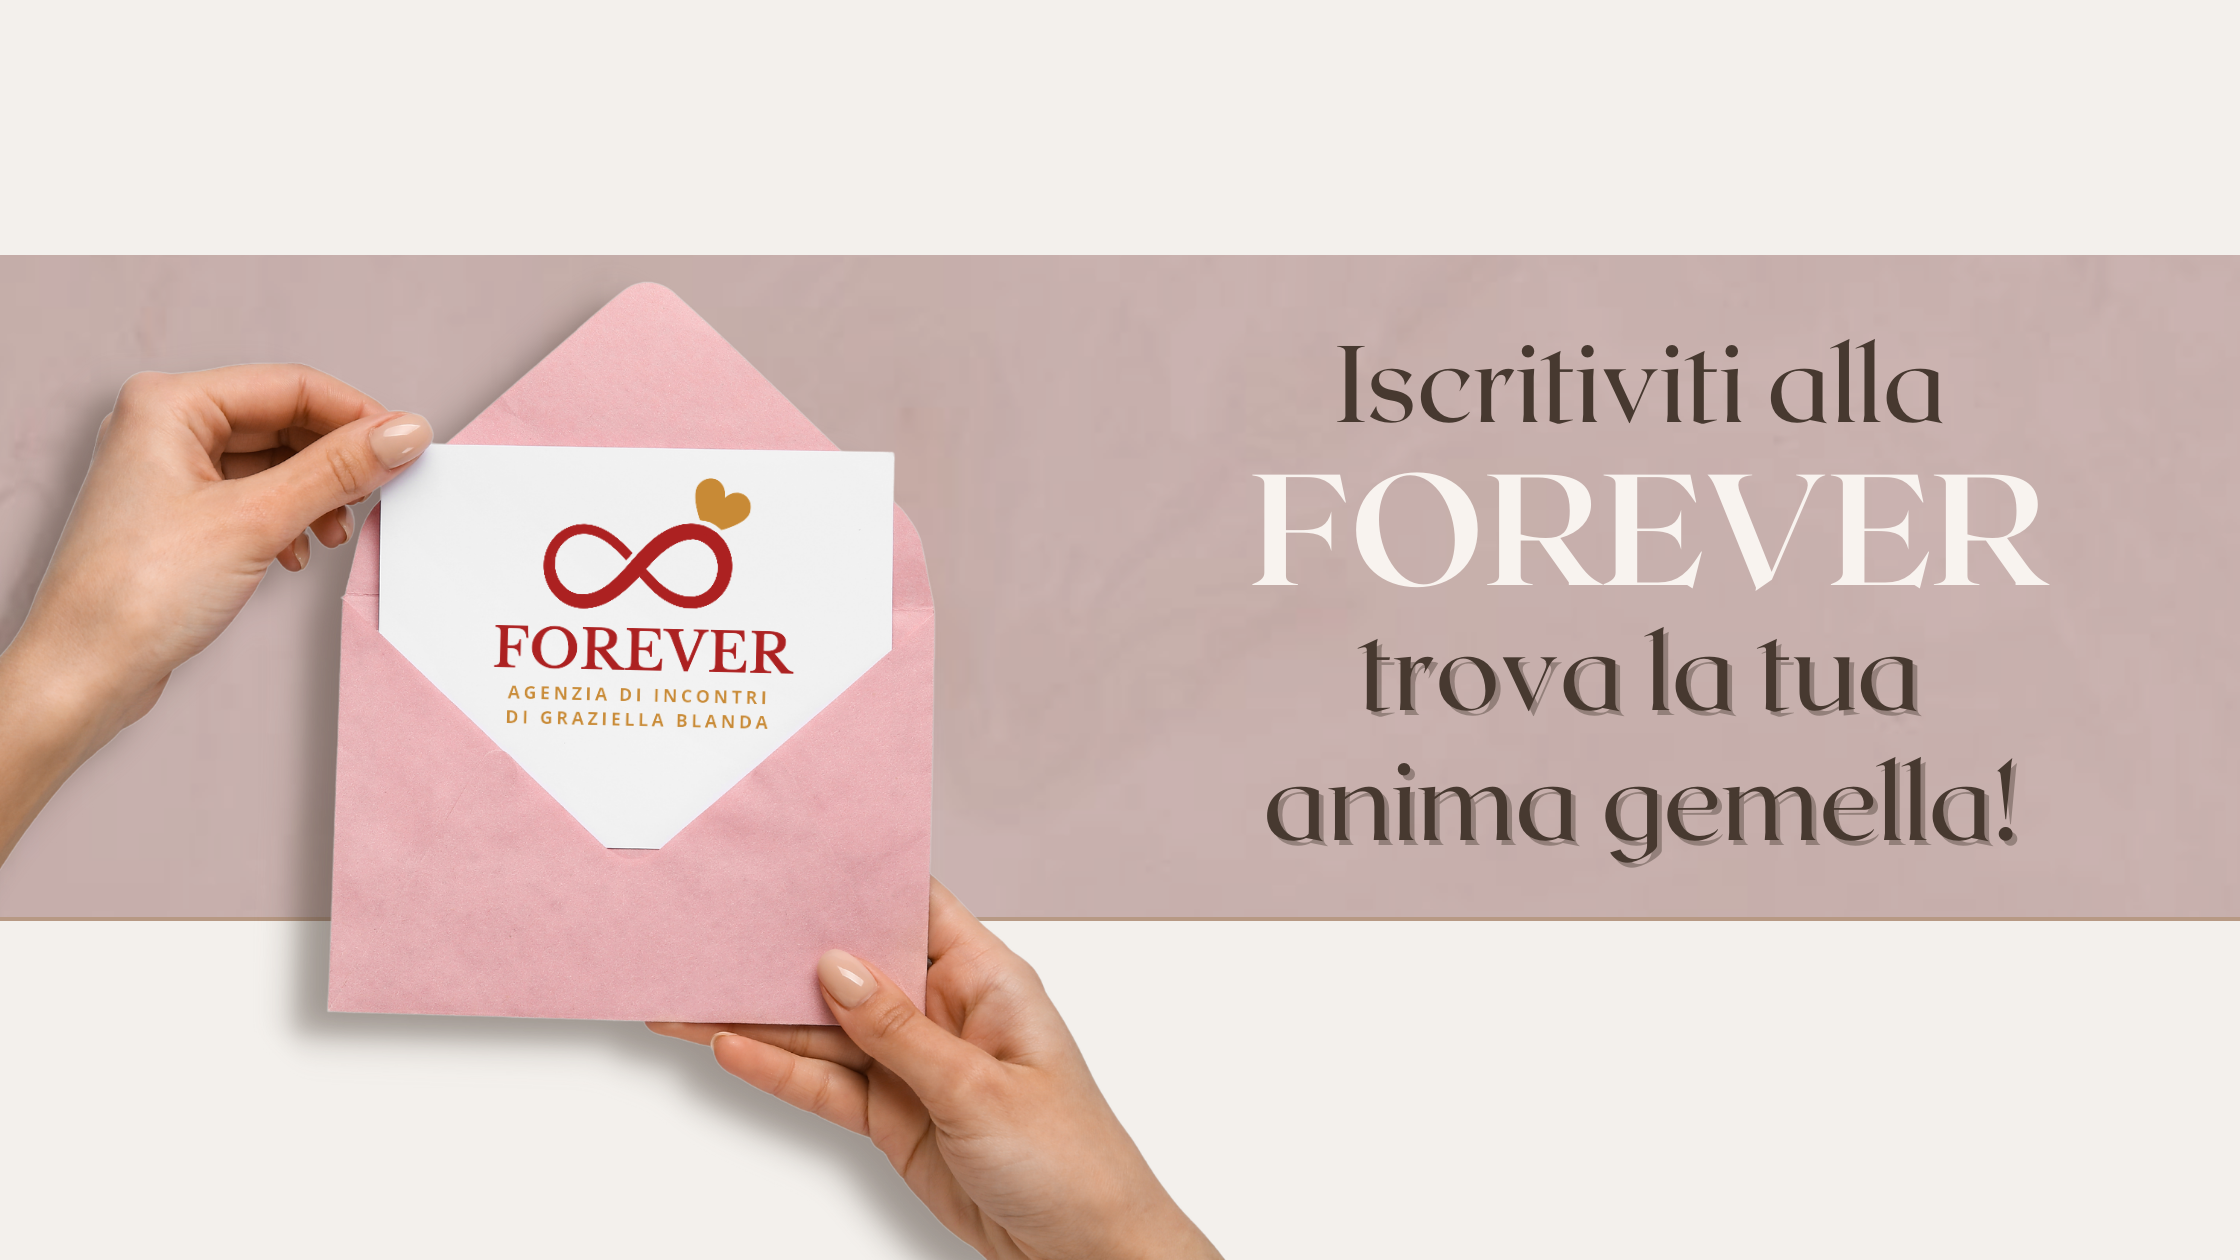 Forever agenzia di incontri di Graziella Blanda Palermo iscriviti alla Forever